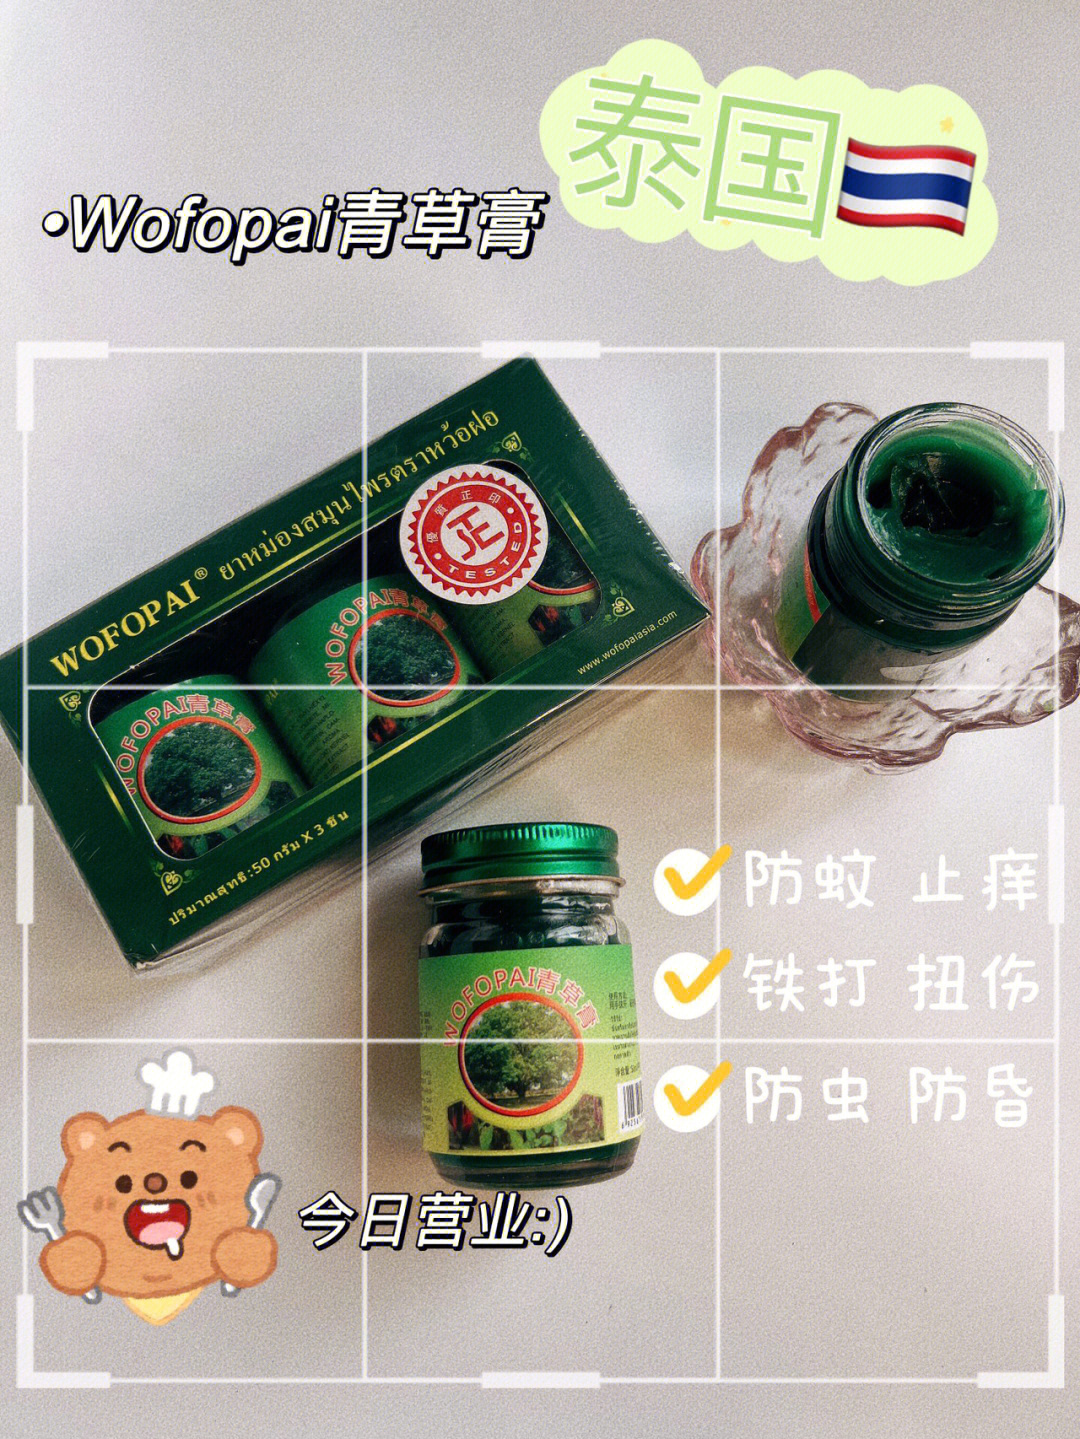 全新版本wofopai青草膏去泰国必买,90家庭必备人手一瓶! 73驱蚊